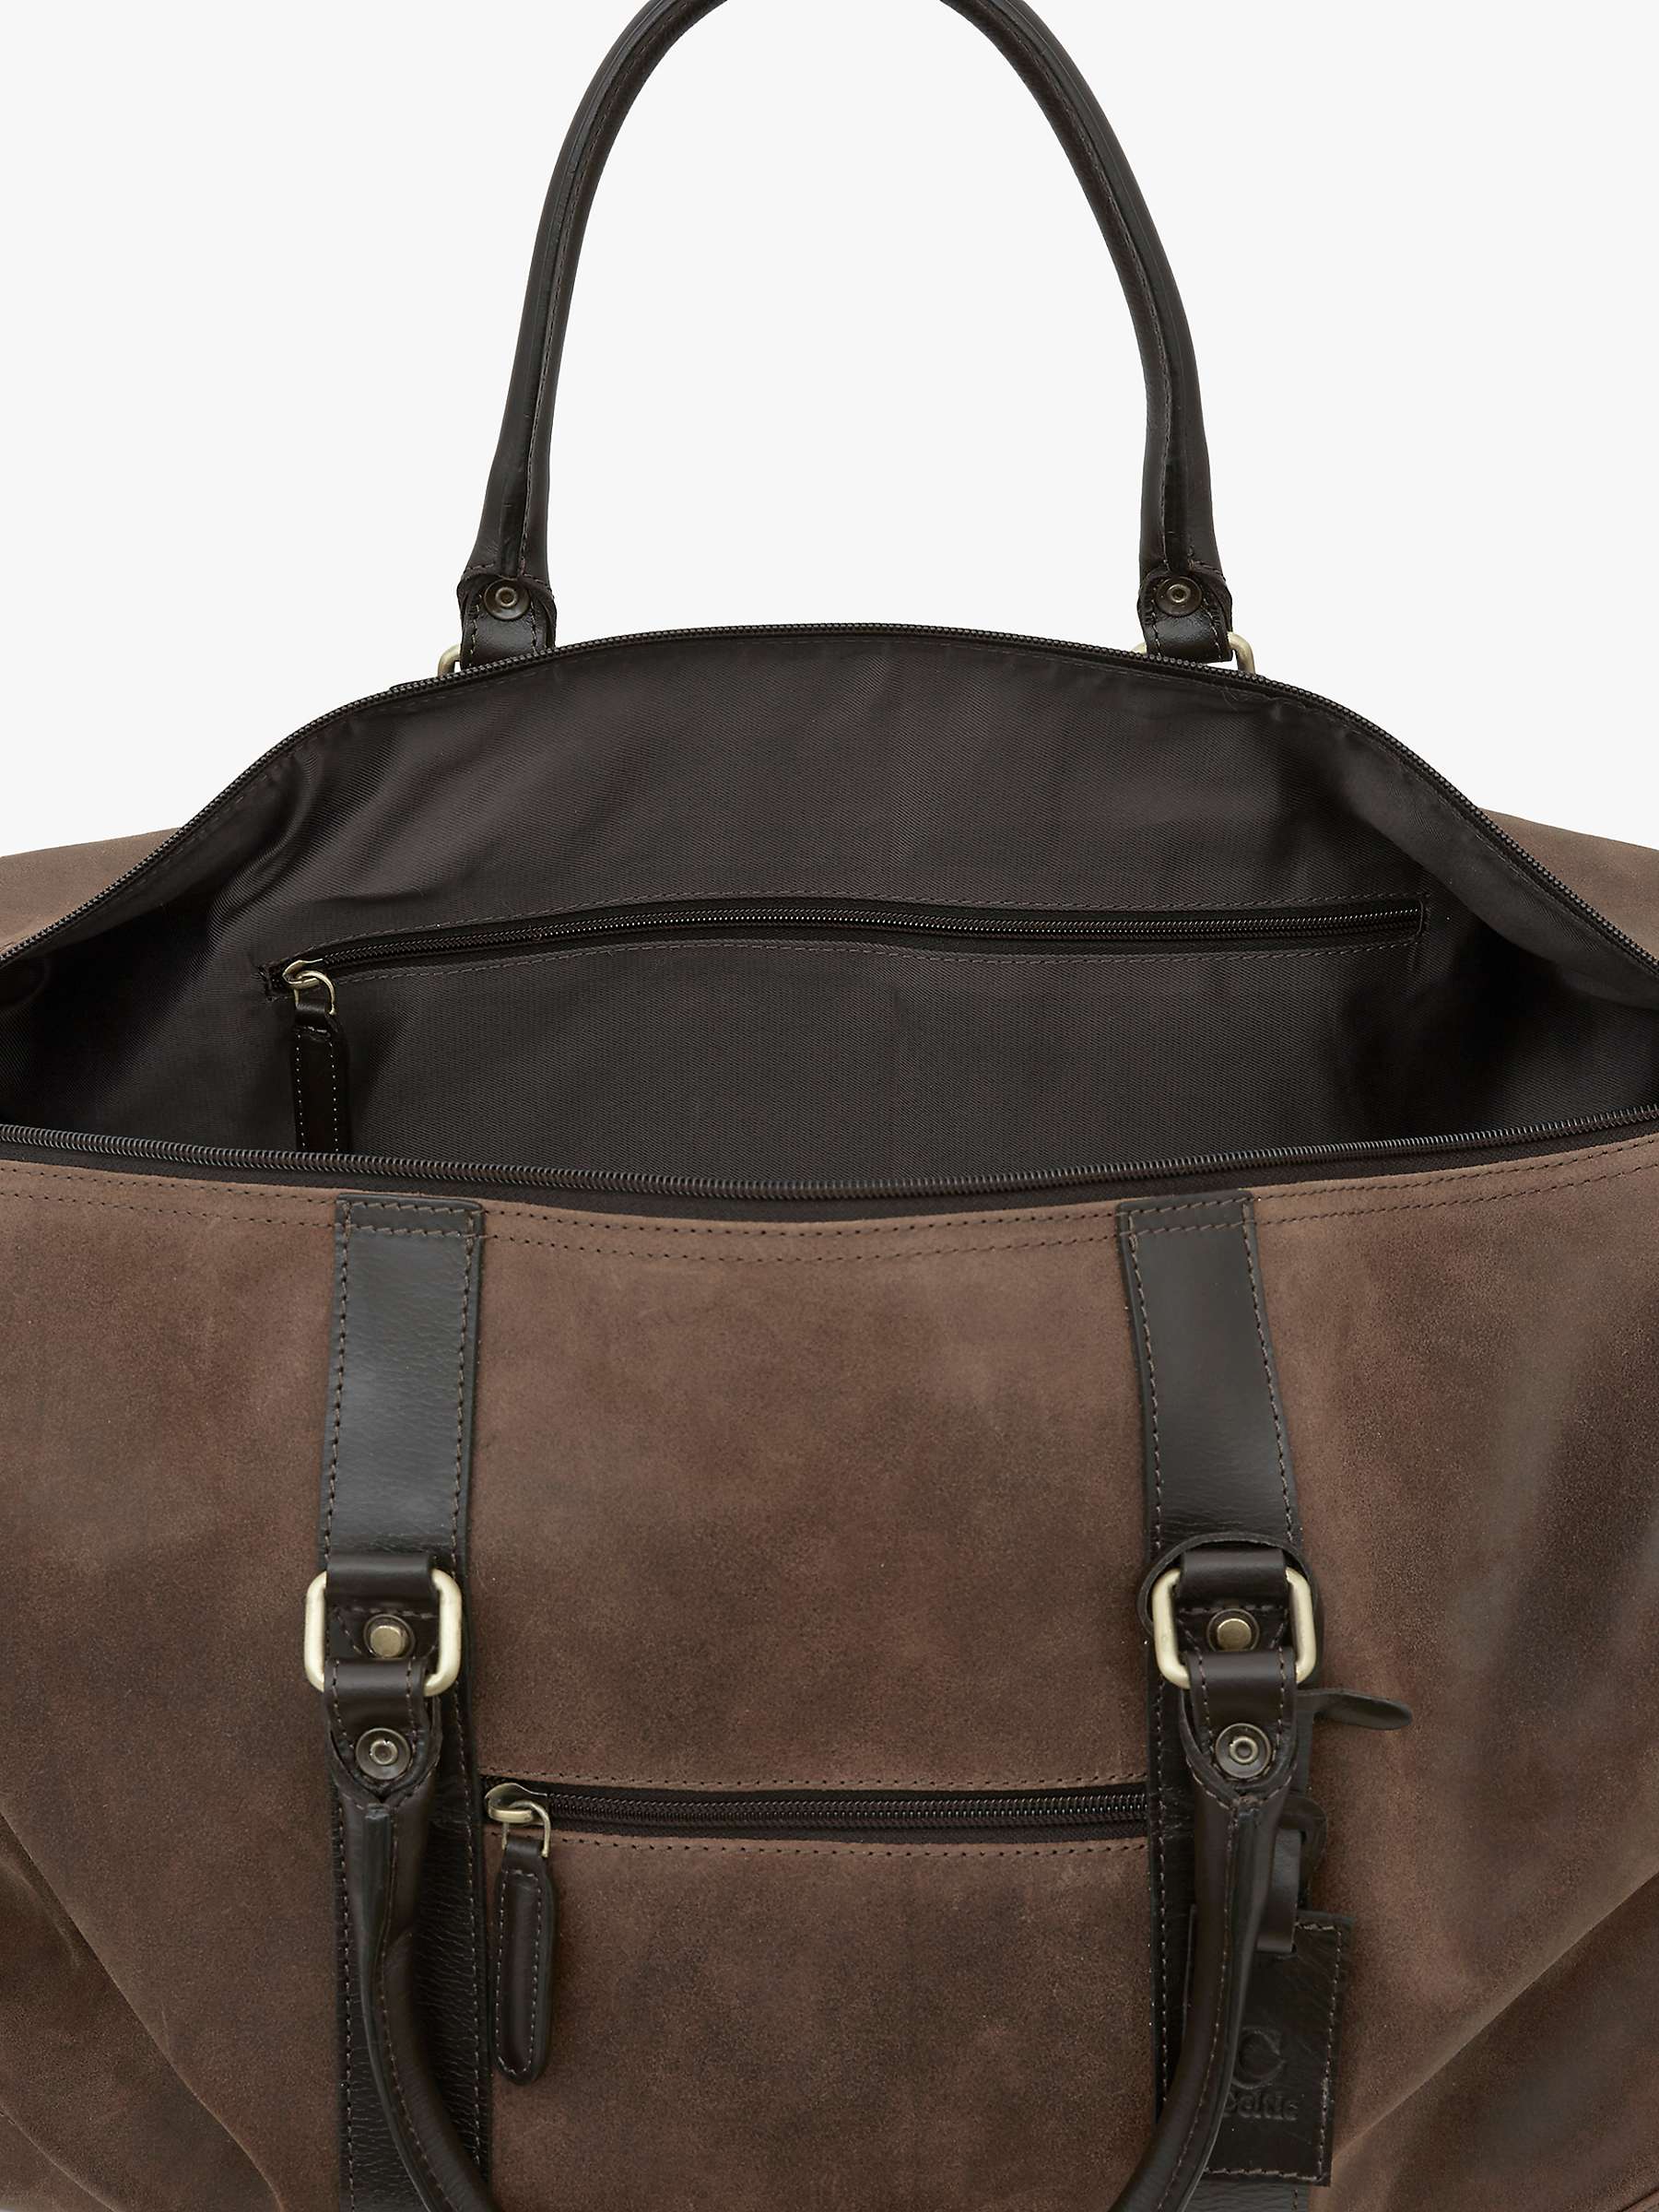 Buy Celtic & Co. Trim Leather Holdall Travel Bag, Brown Online at johnlewis.com